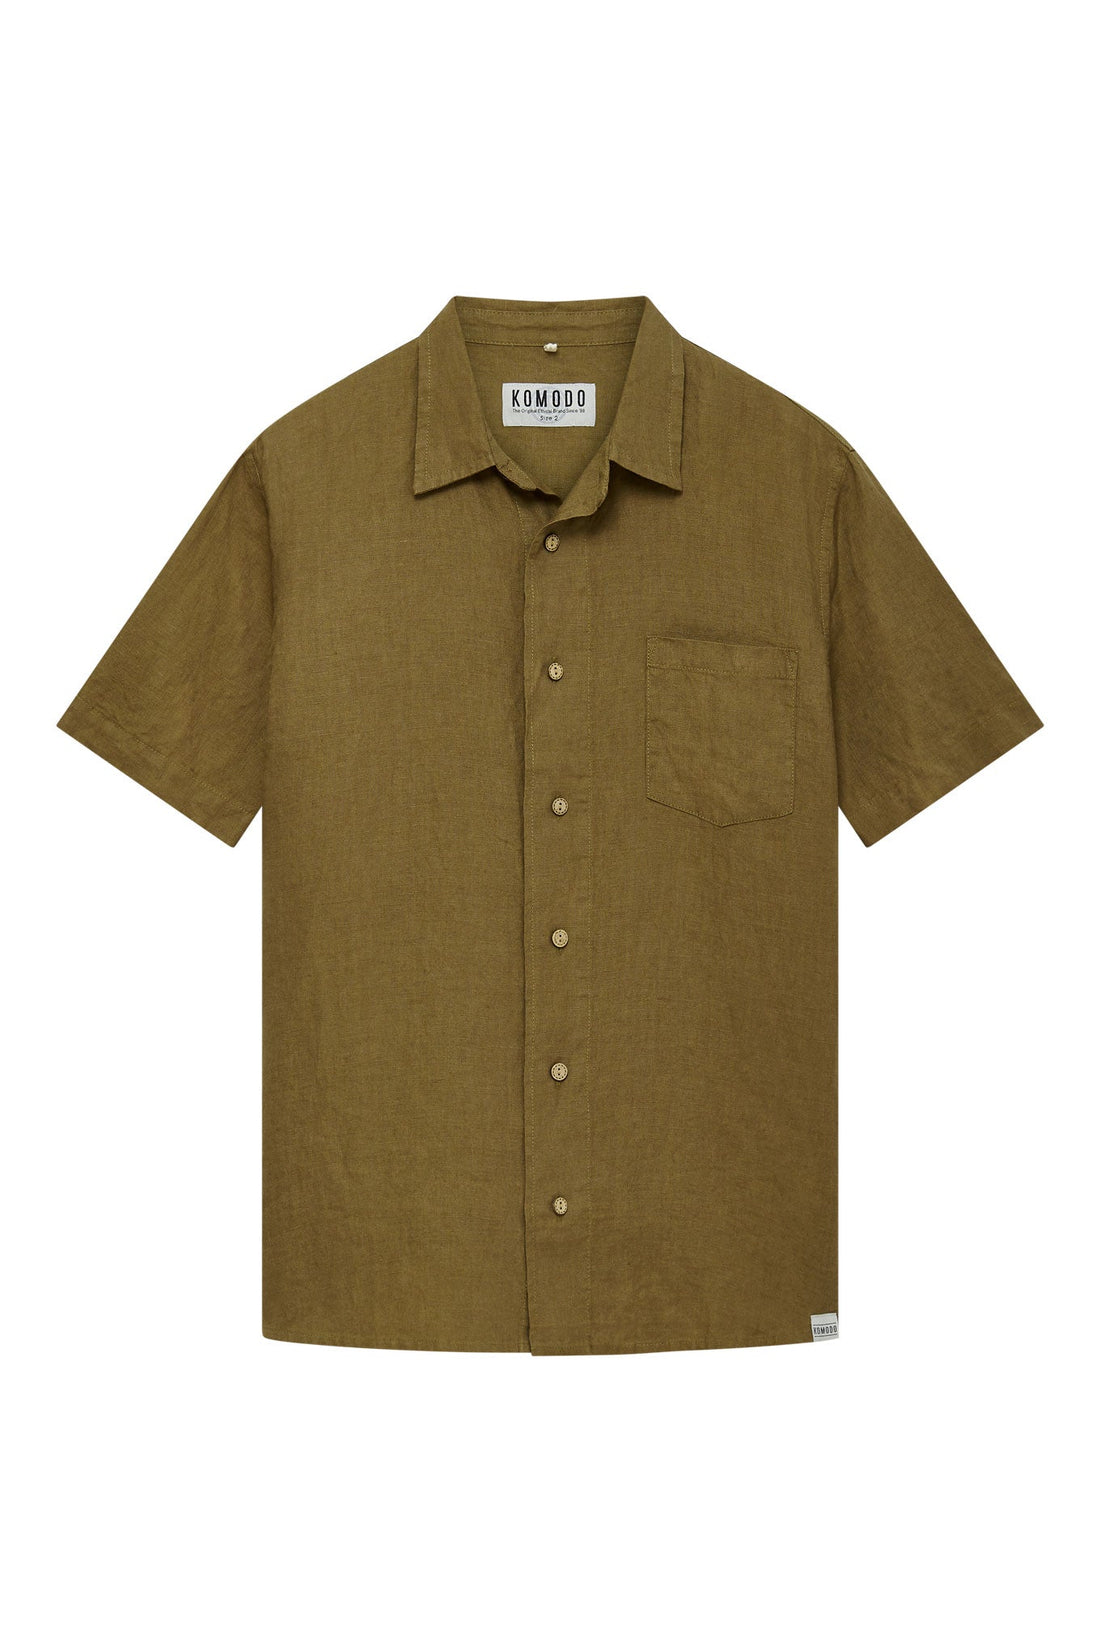 DINGWALLS - Linen Shirt Khaki